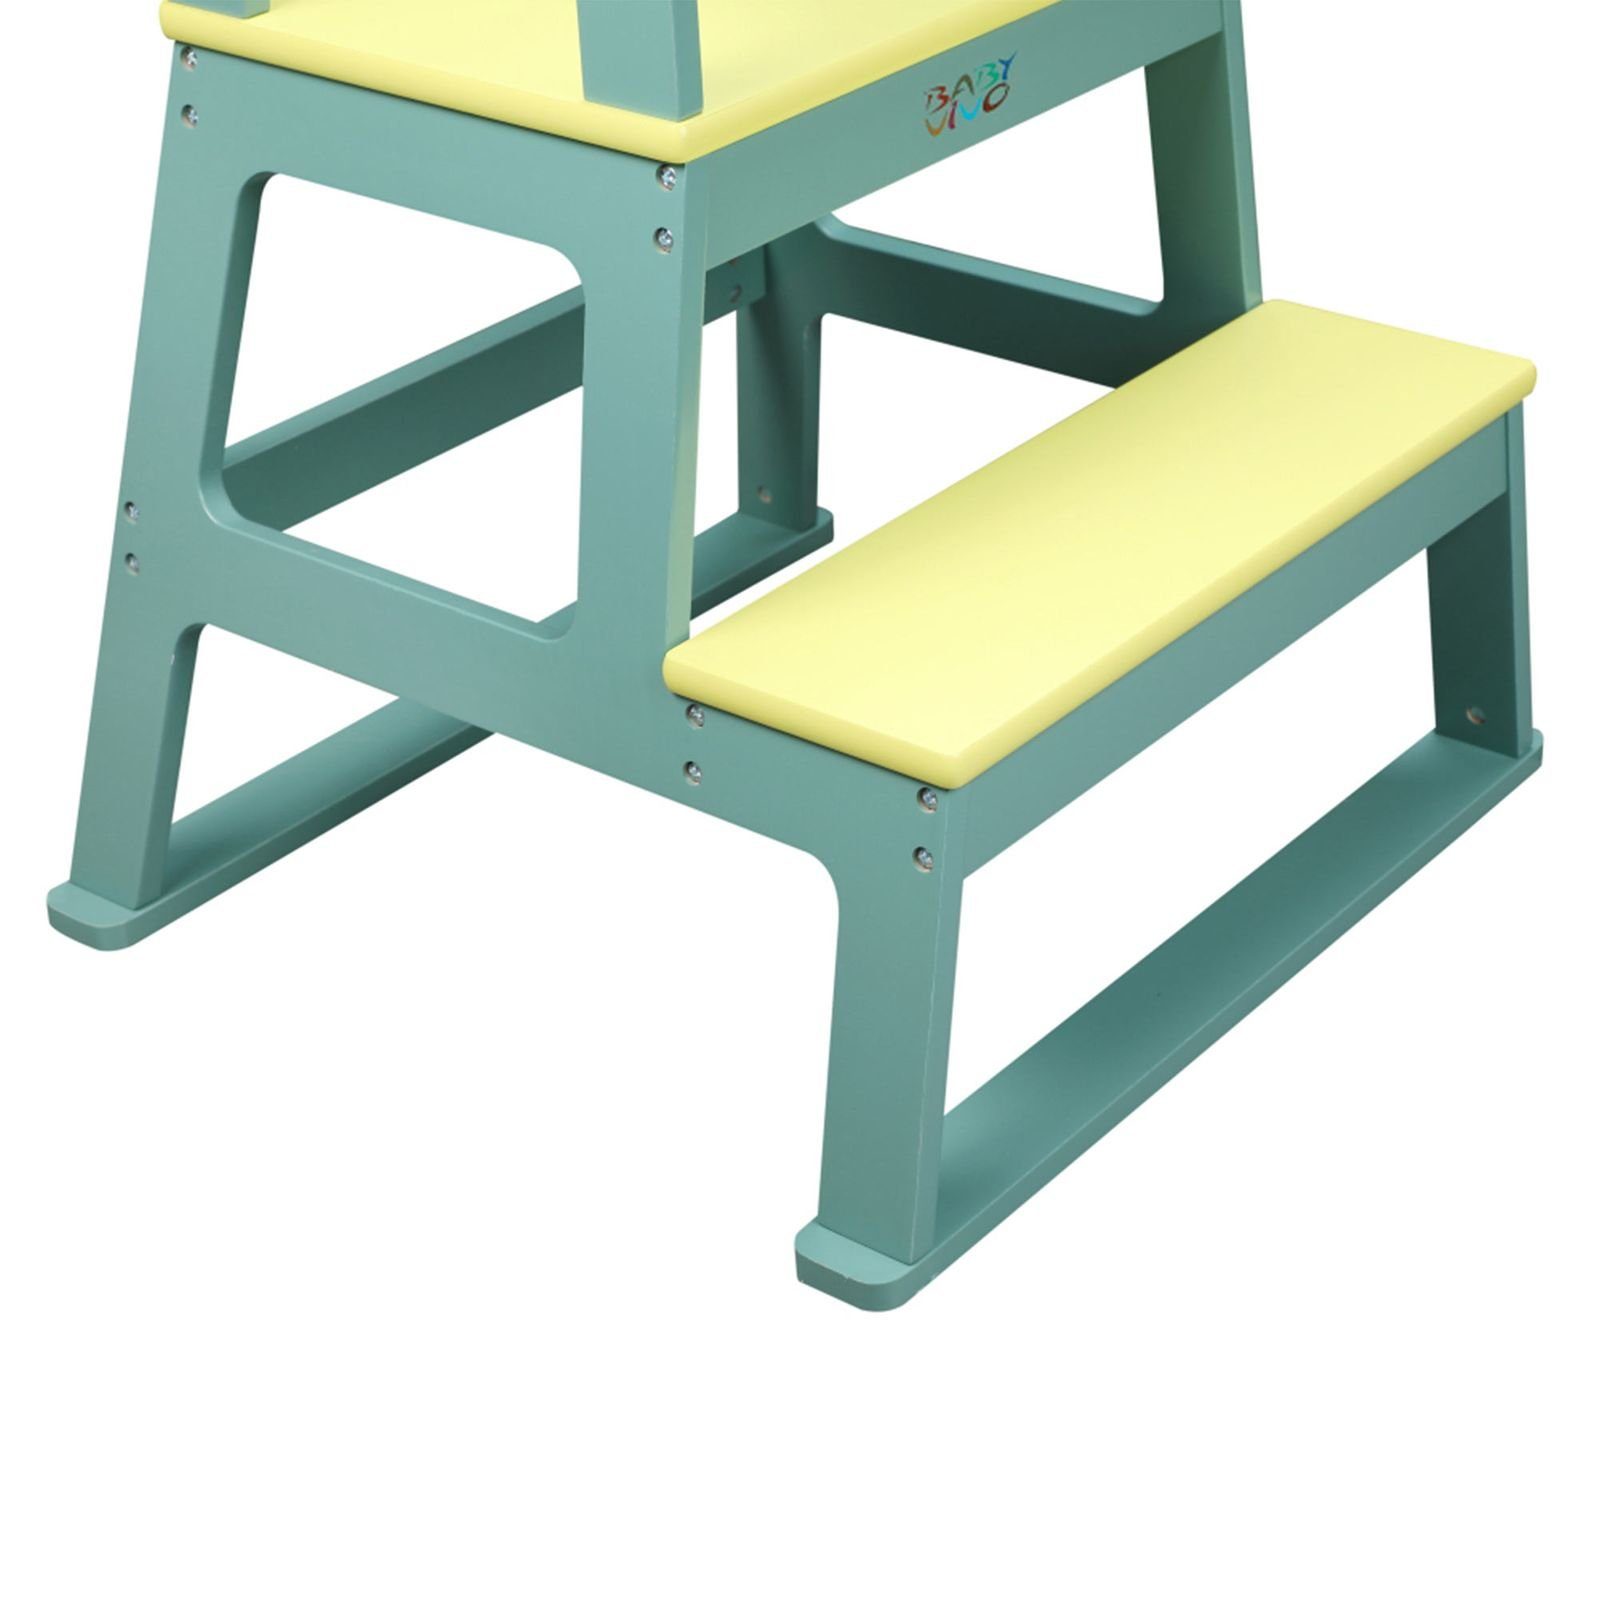 - Grün Mint Tafel Holz Baby Vivo Mit in Lernturm Stehhilfe aus